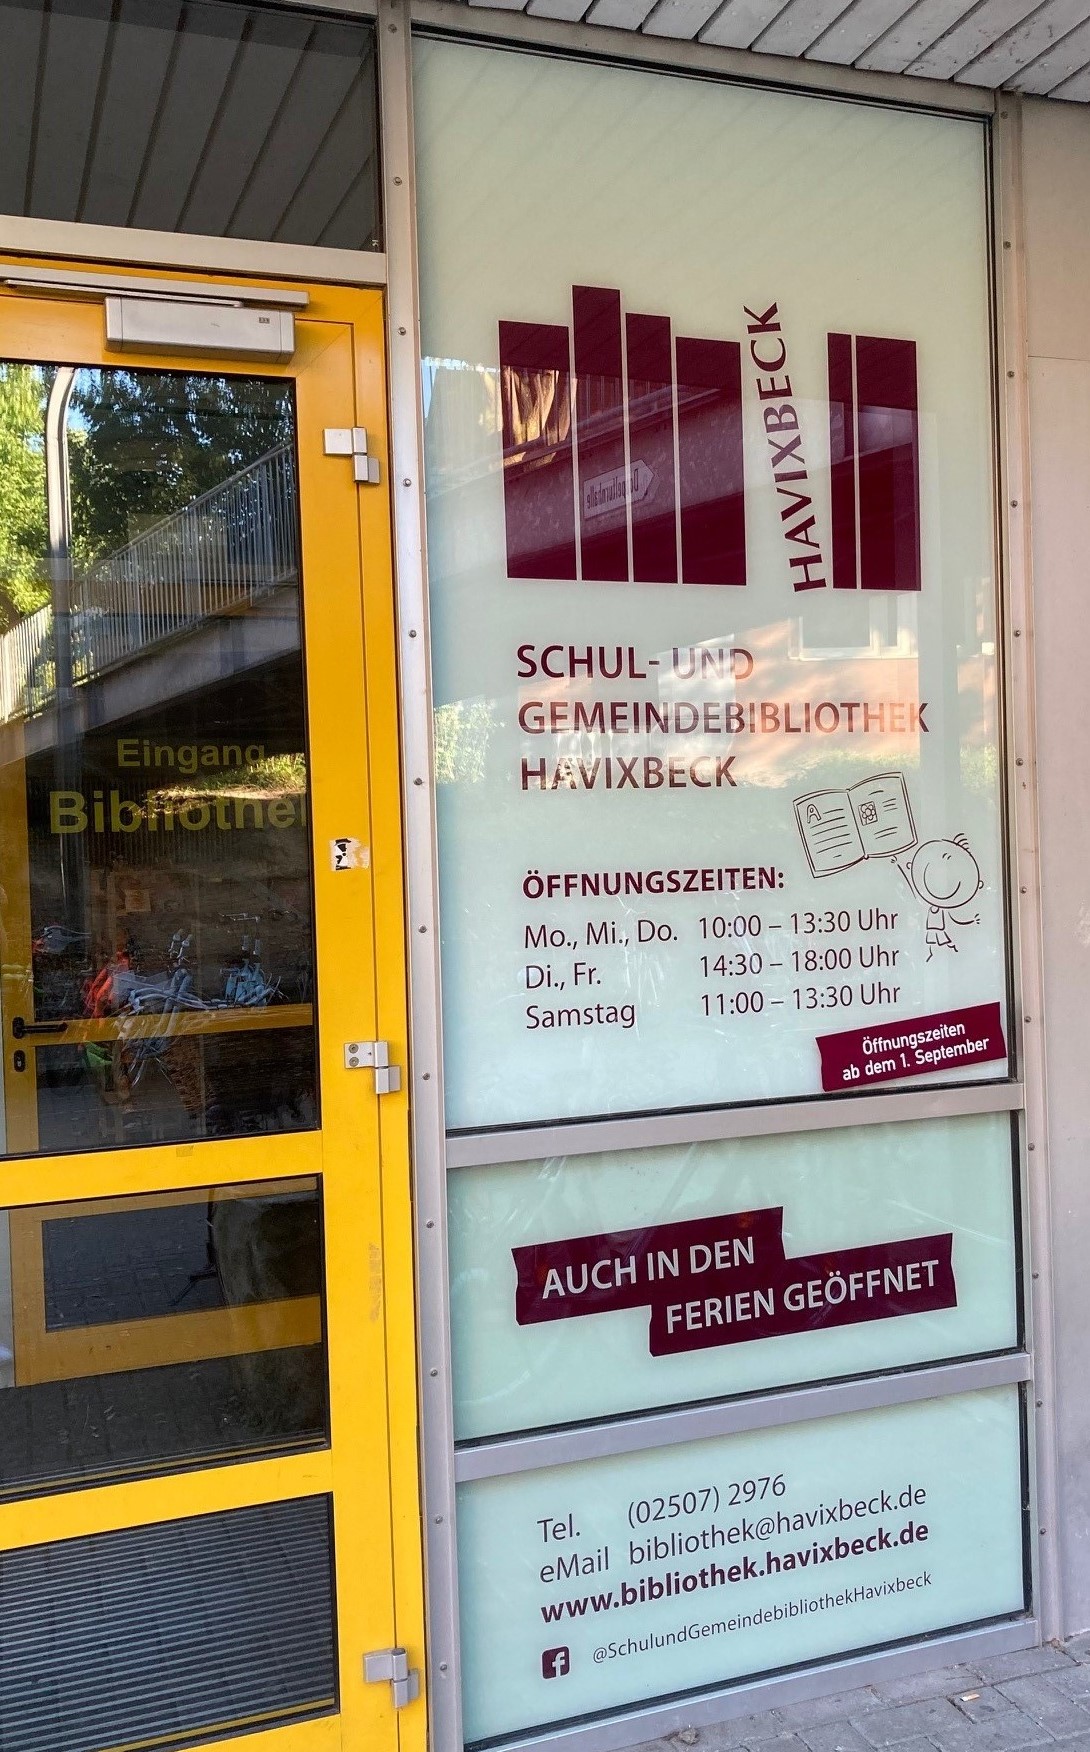 Schul- und Gemeindebliothek öffnet regulär in den Sommerferien